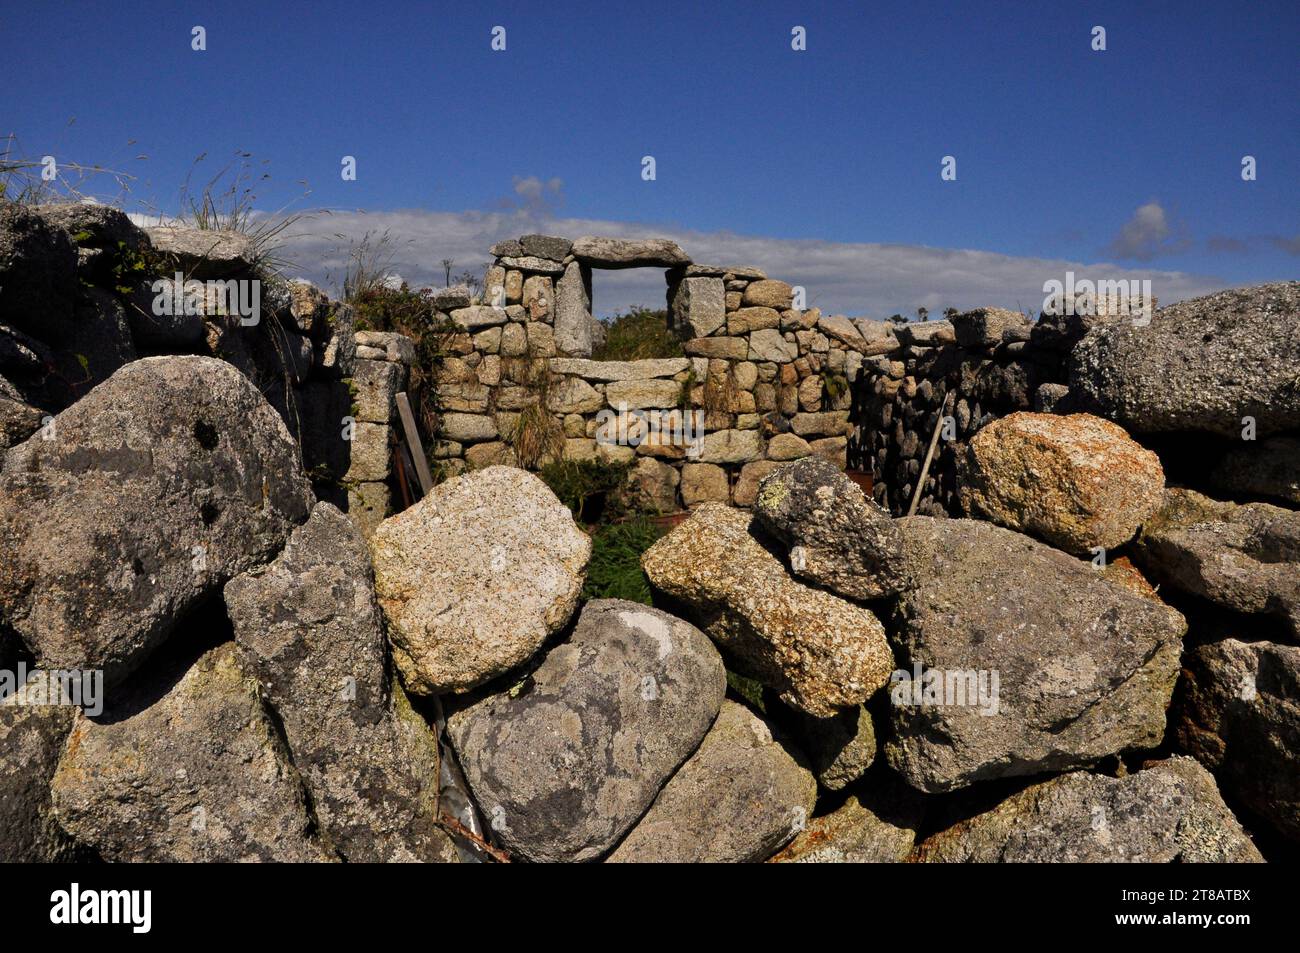 Cabane en pierre de granit ruinée sur l'île de St Martins dans les îles de Scilly indique la douceur de vivre tranquille des îles. L'esprit du ciel bleu vif Banque D'Images